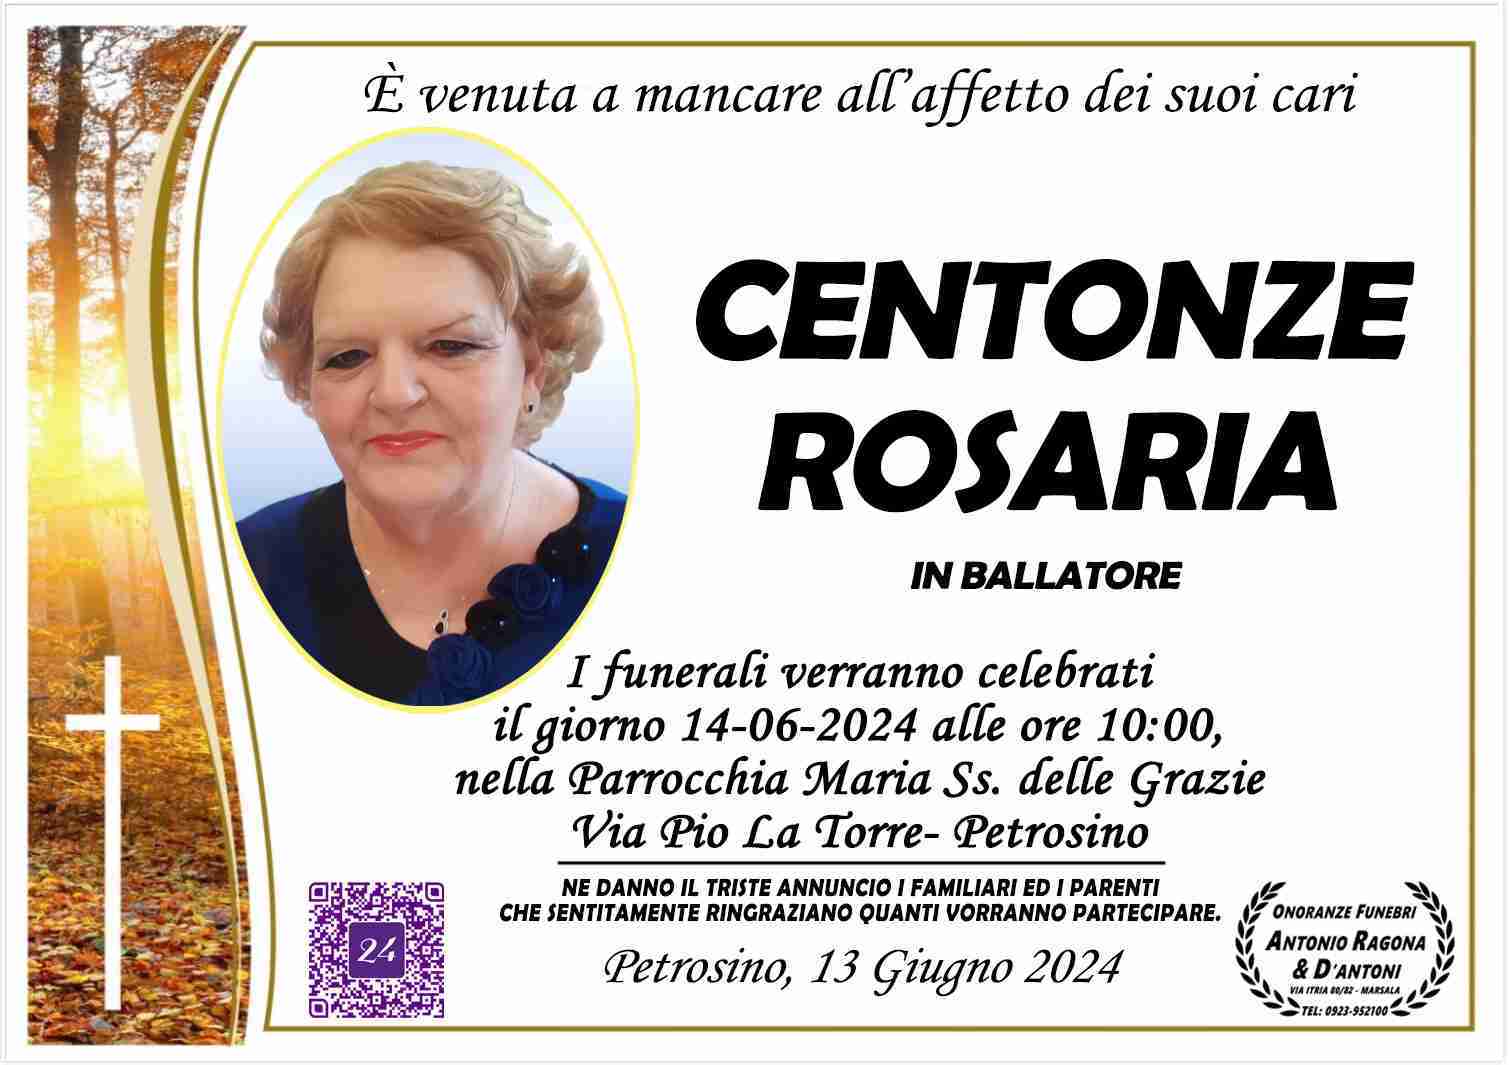 Rosaria Centonze